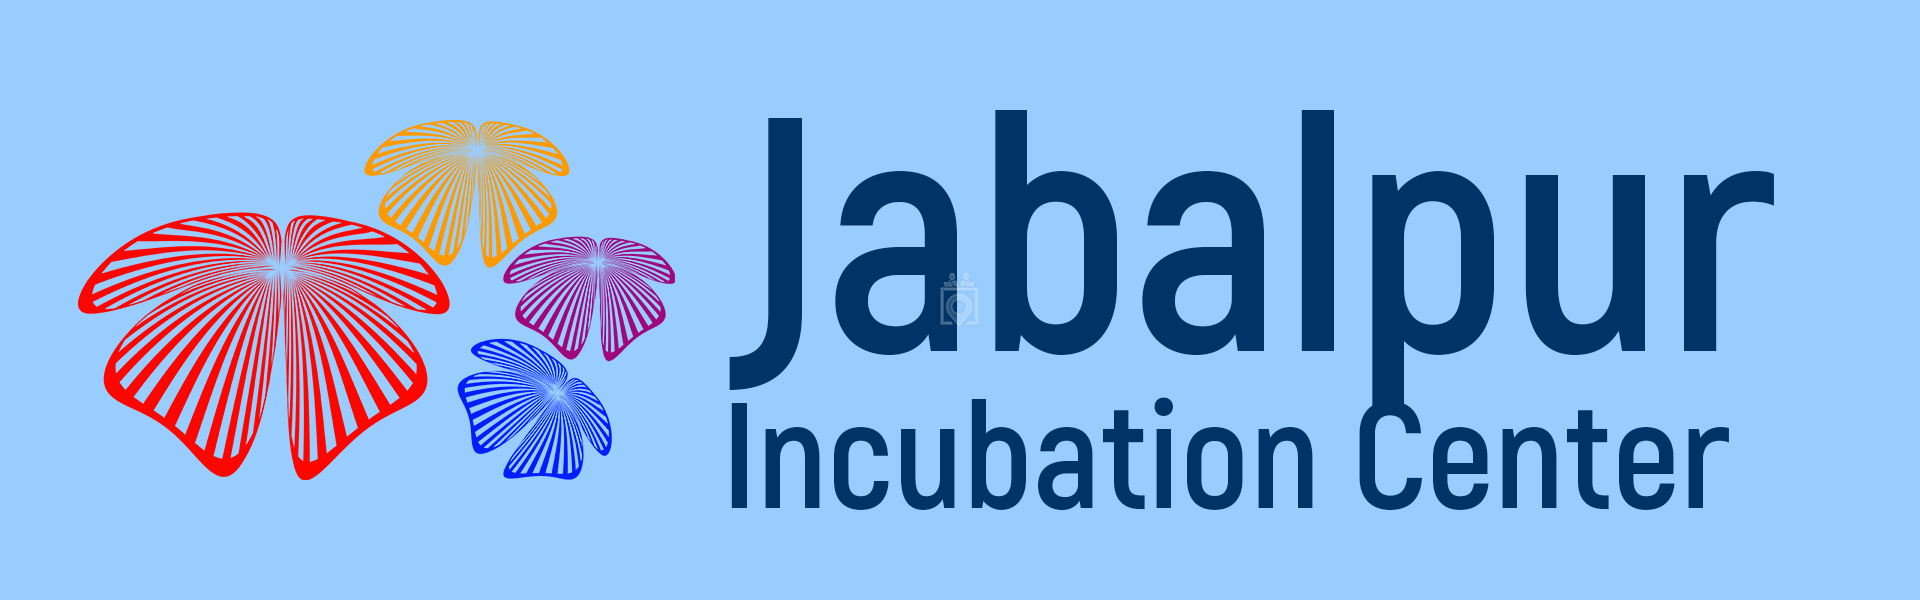 Belbag Jabalpur Xxx Video - Jabalpur Incubation Center, Jabalpur - Book Online - Coworker